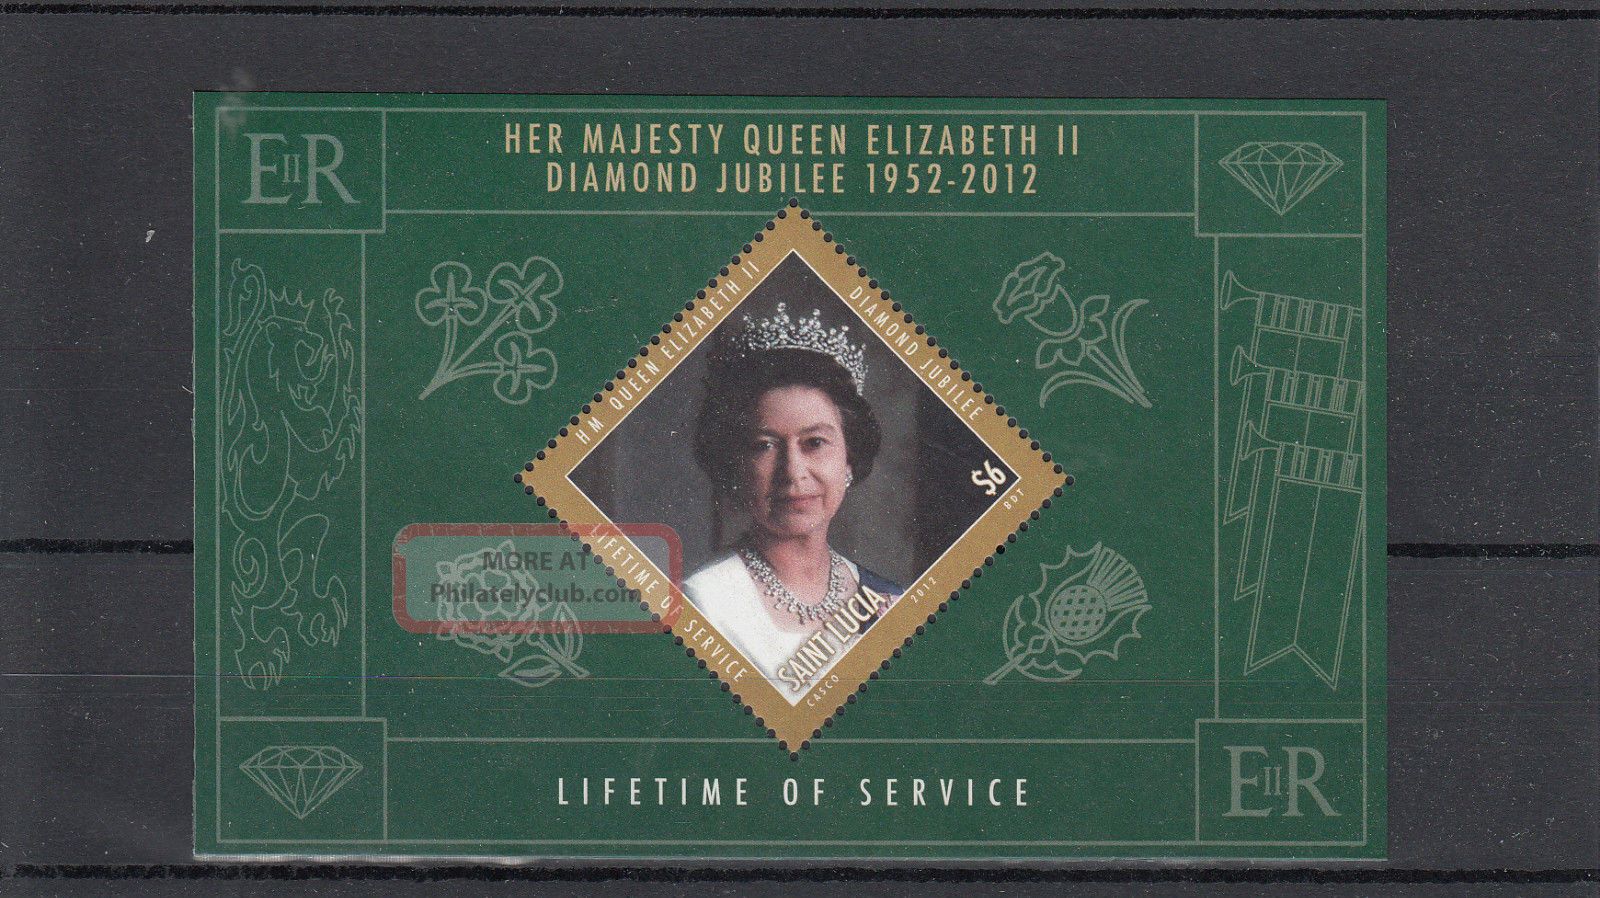 St Lucia 2012 Diamond Jubilee 1v Sheet Queen Elizabeth Ii Lifetime Service Caribbean photo